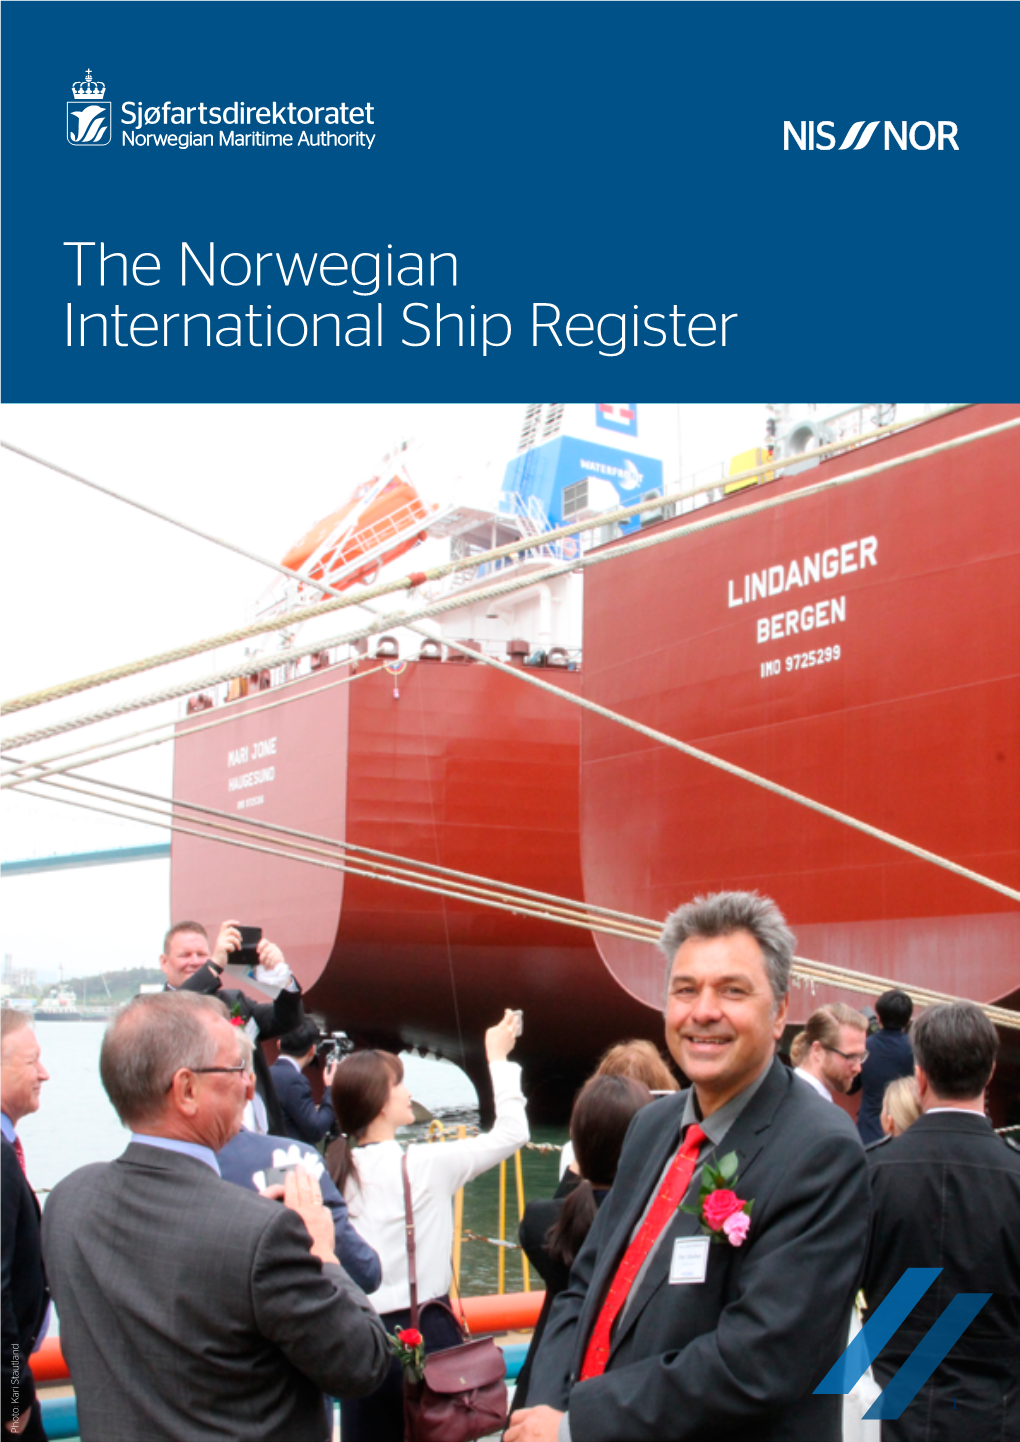 The Norwegian International Ship Register